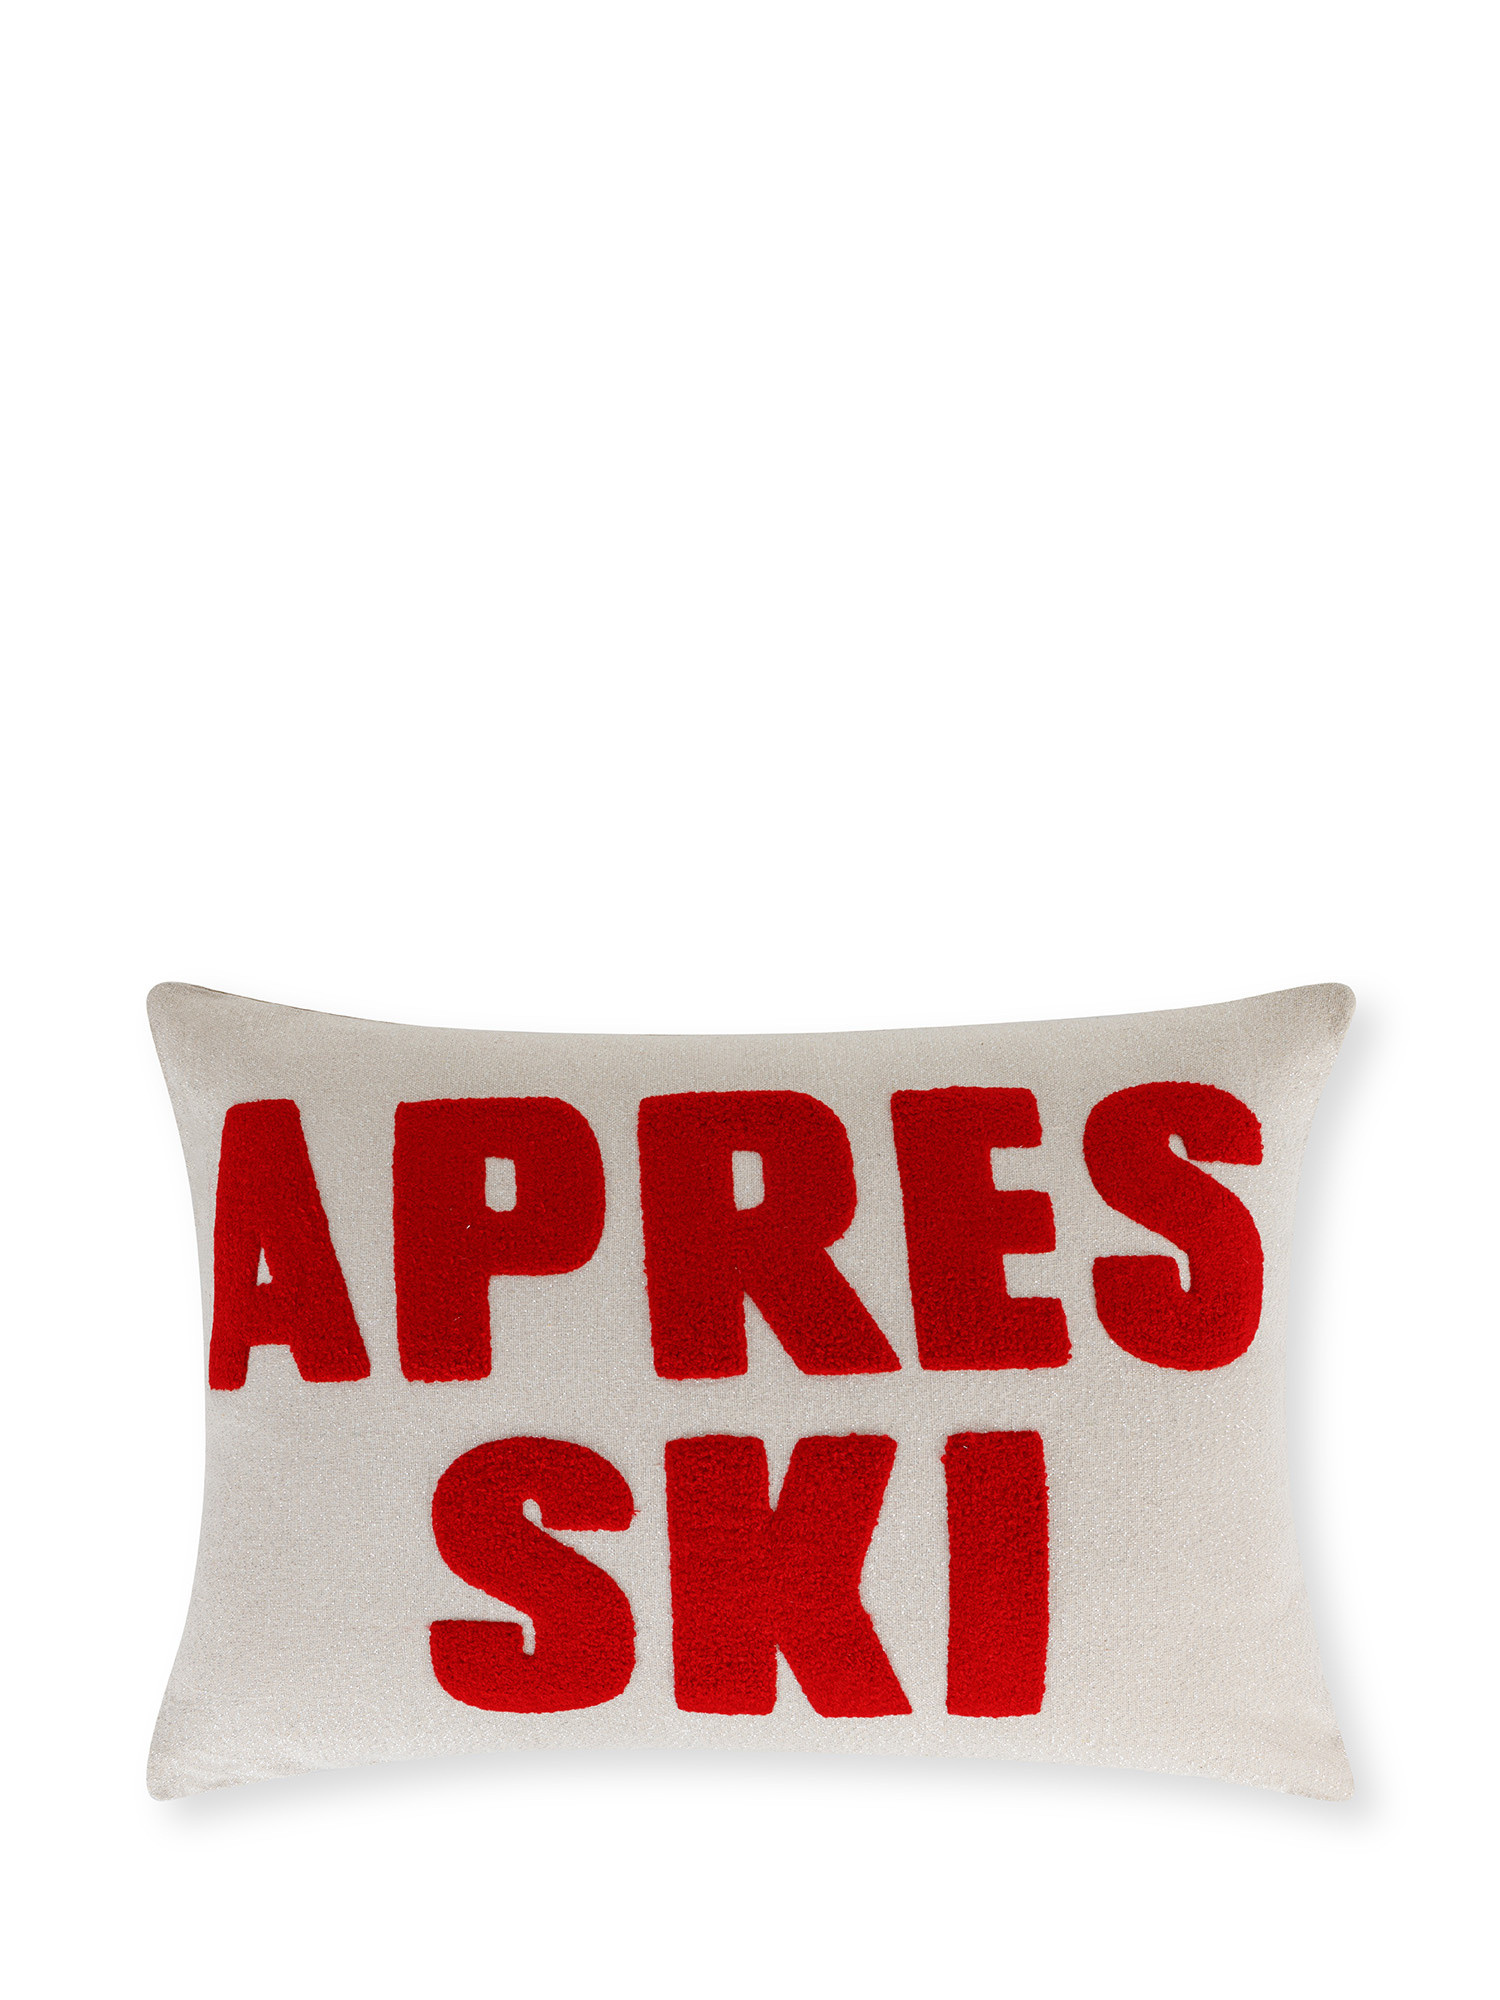 Cuscino ricamato apres ski 35x50 cm, Rosso, large image number 0